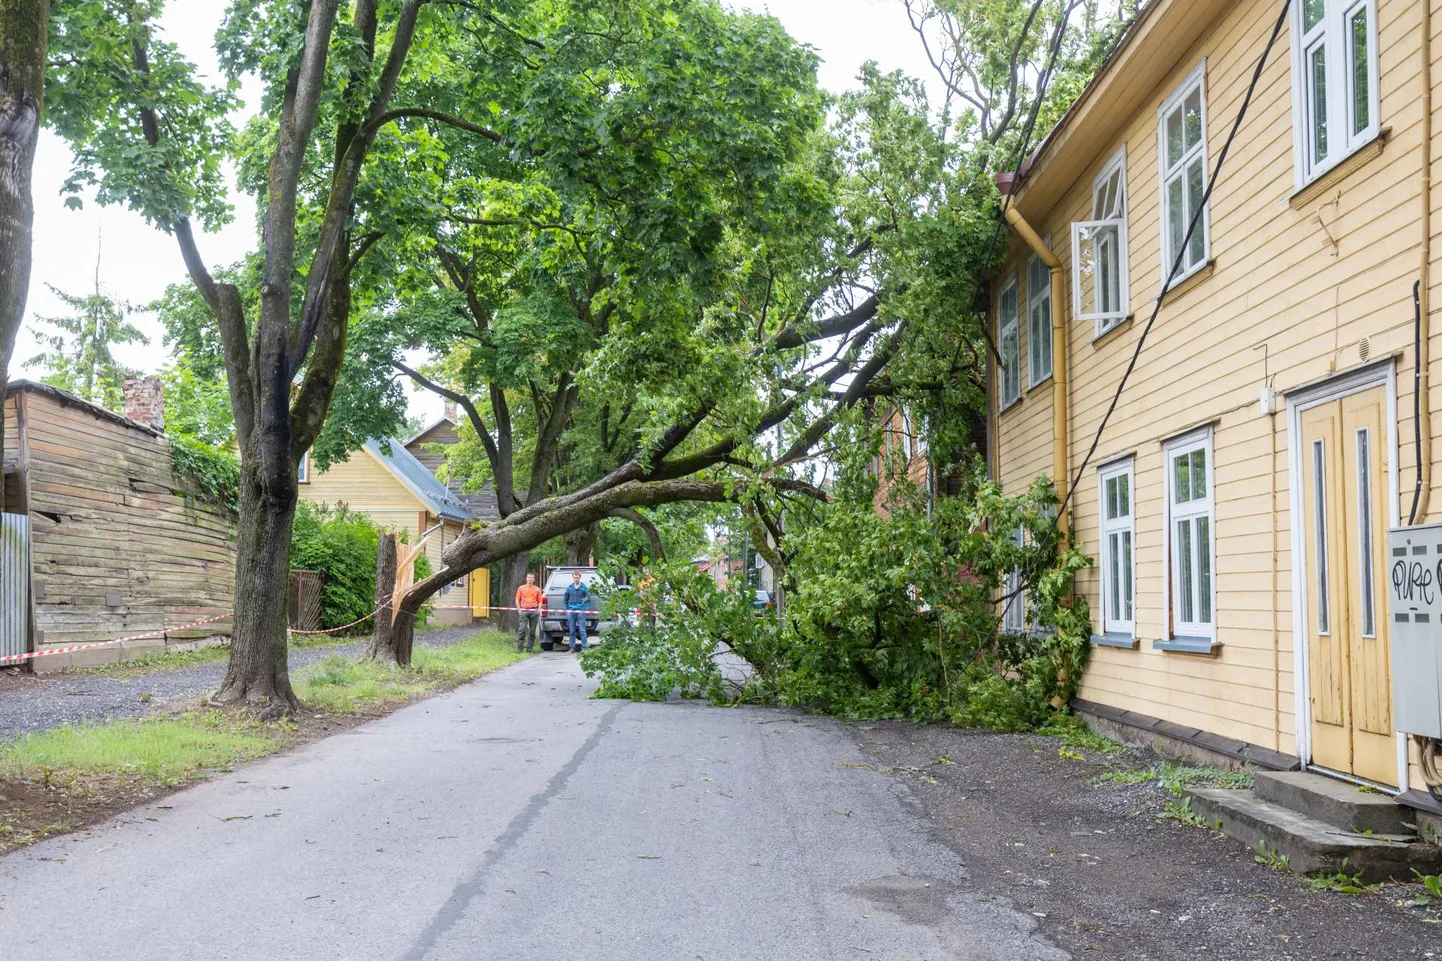 Pühapäeval veidi enne kella kolme jõudis Tartu kohale tormituul ja padusadu. Hetkega olid tänavad üle ujutatud ning tormituul räsis puid. Pildil Salme 22 majale peale murdunud puu esmaspäeva hommikul.